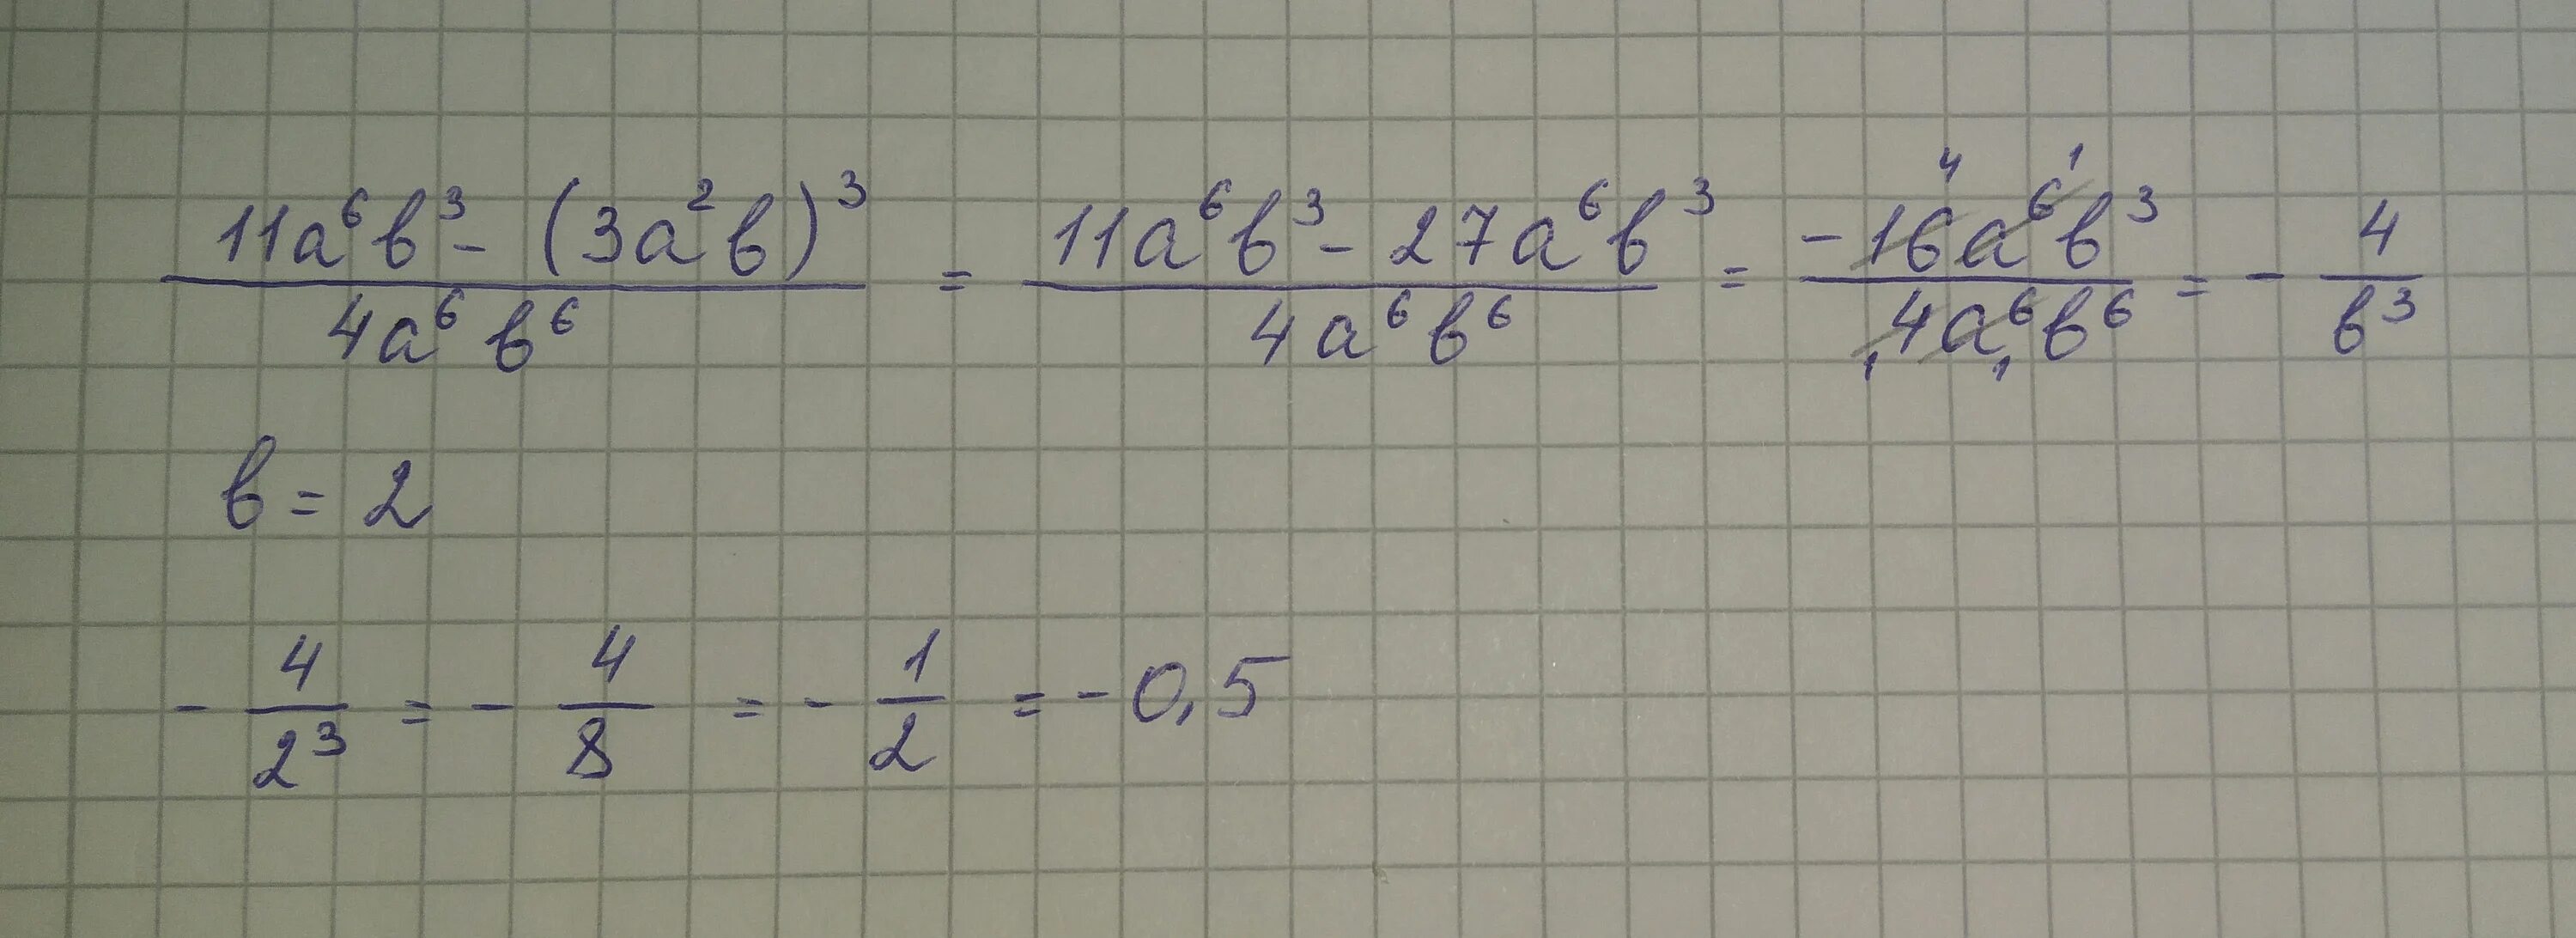 A5 3 4 3 a1 3. (11�� 6 ∙ 𝑏 3 − (3𝑎 2𝑏) 3 ): (4𝑎 6𝑏 6 ). 11a6b3 3a2b 3 4a6b6 при b 2. (A-2)(A-11)-2a(4-3a). \\А+6\-А при а=-3.